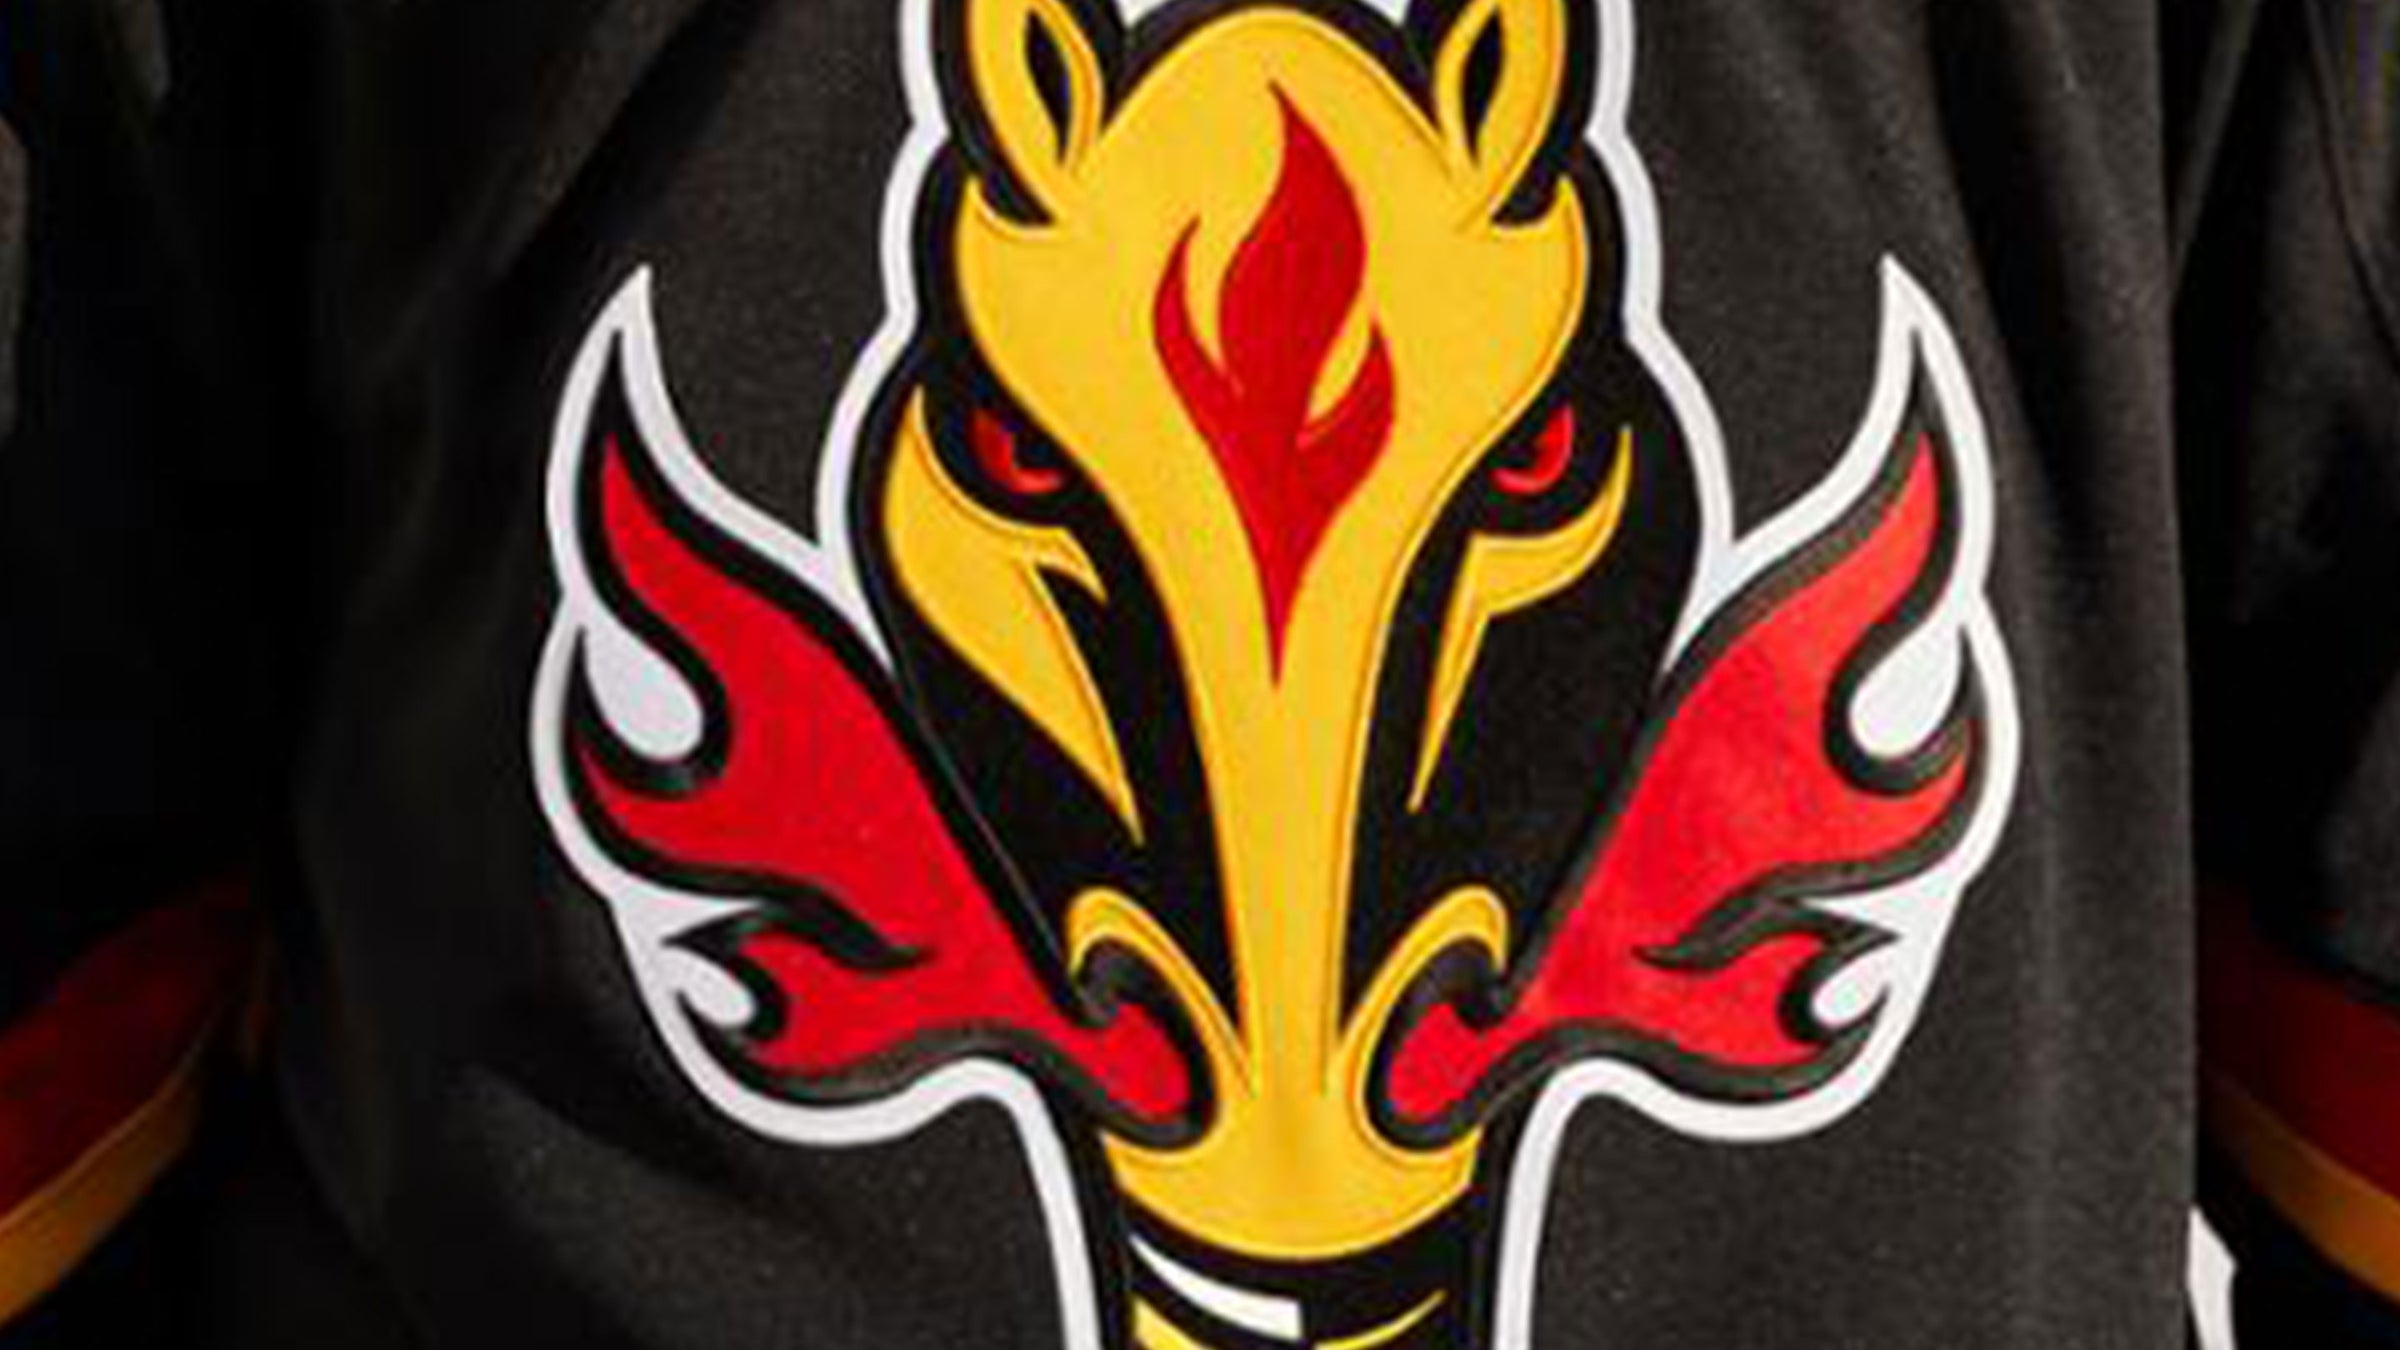 Calgary Flames Jerseys, Flames Jersey, Flames Breakaway Jerseys